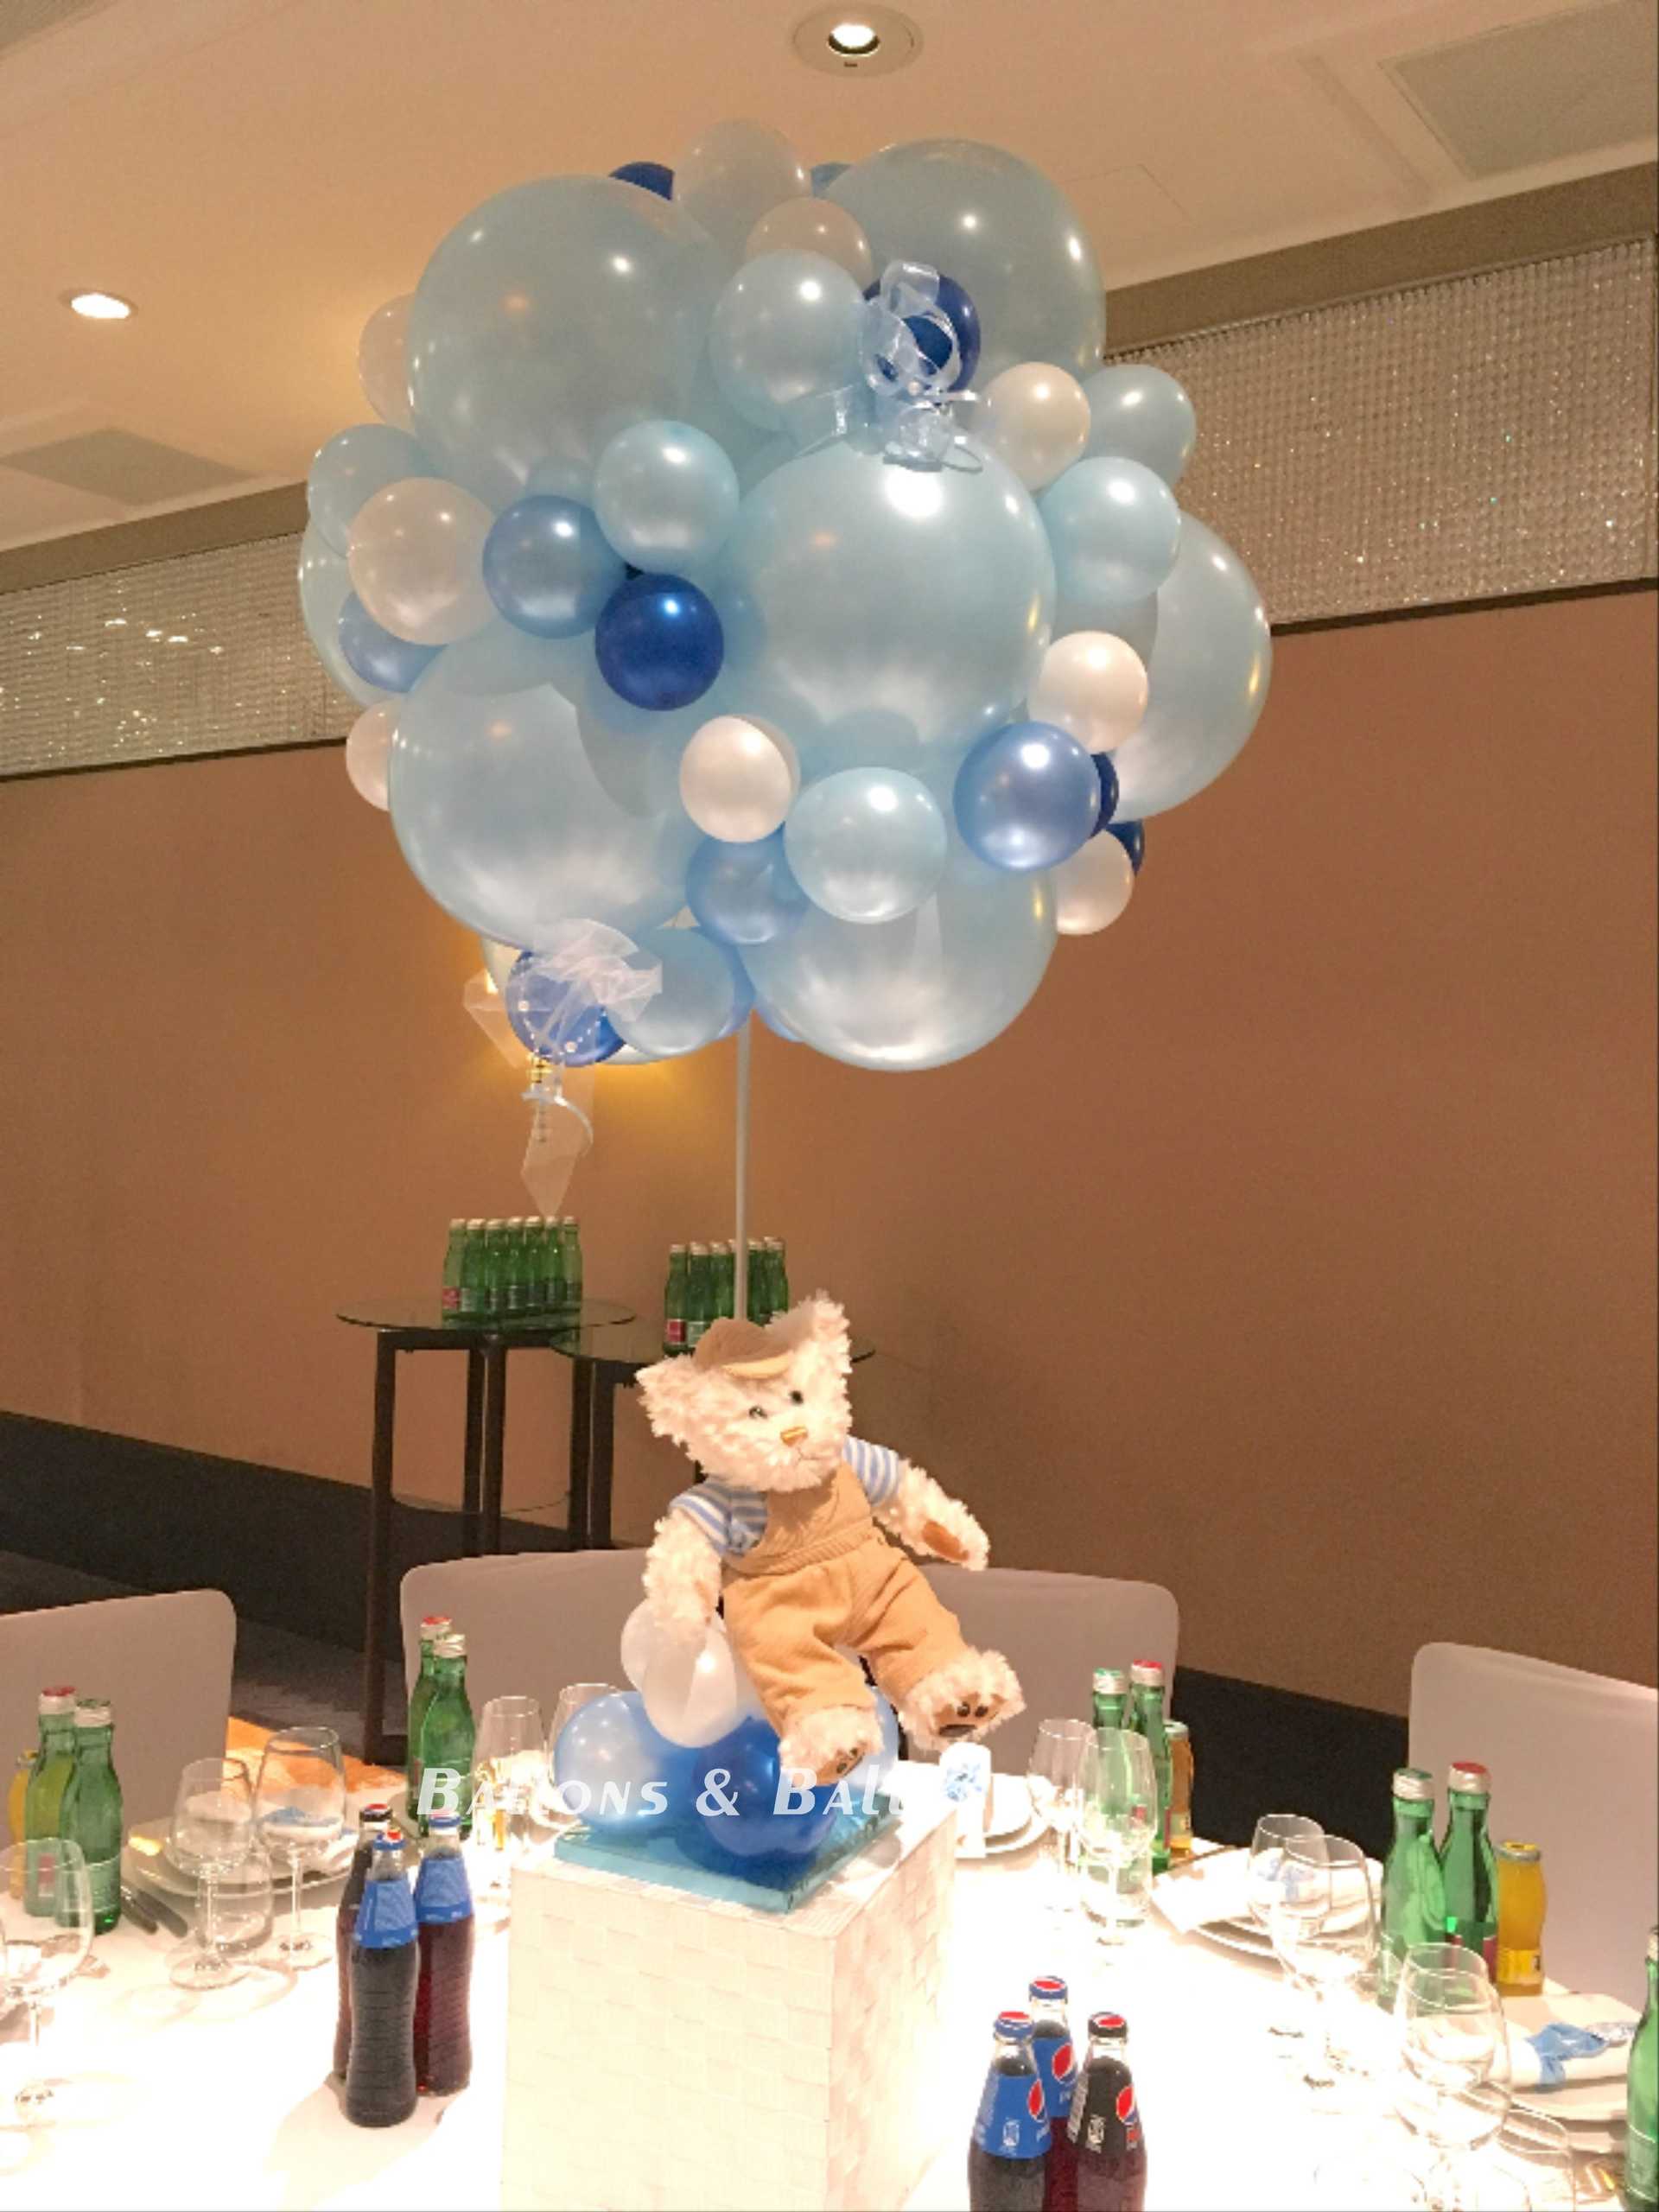 Ein Teddybär sitzt auf einer Ballontraube.